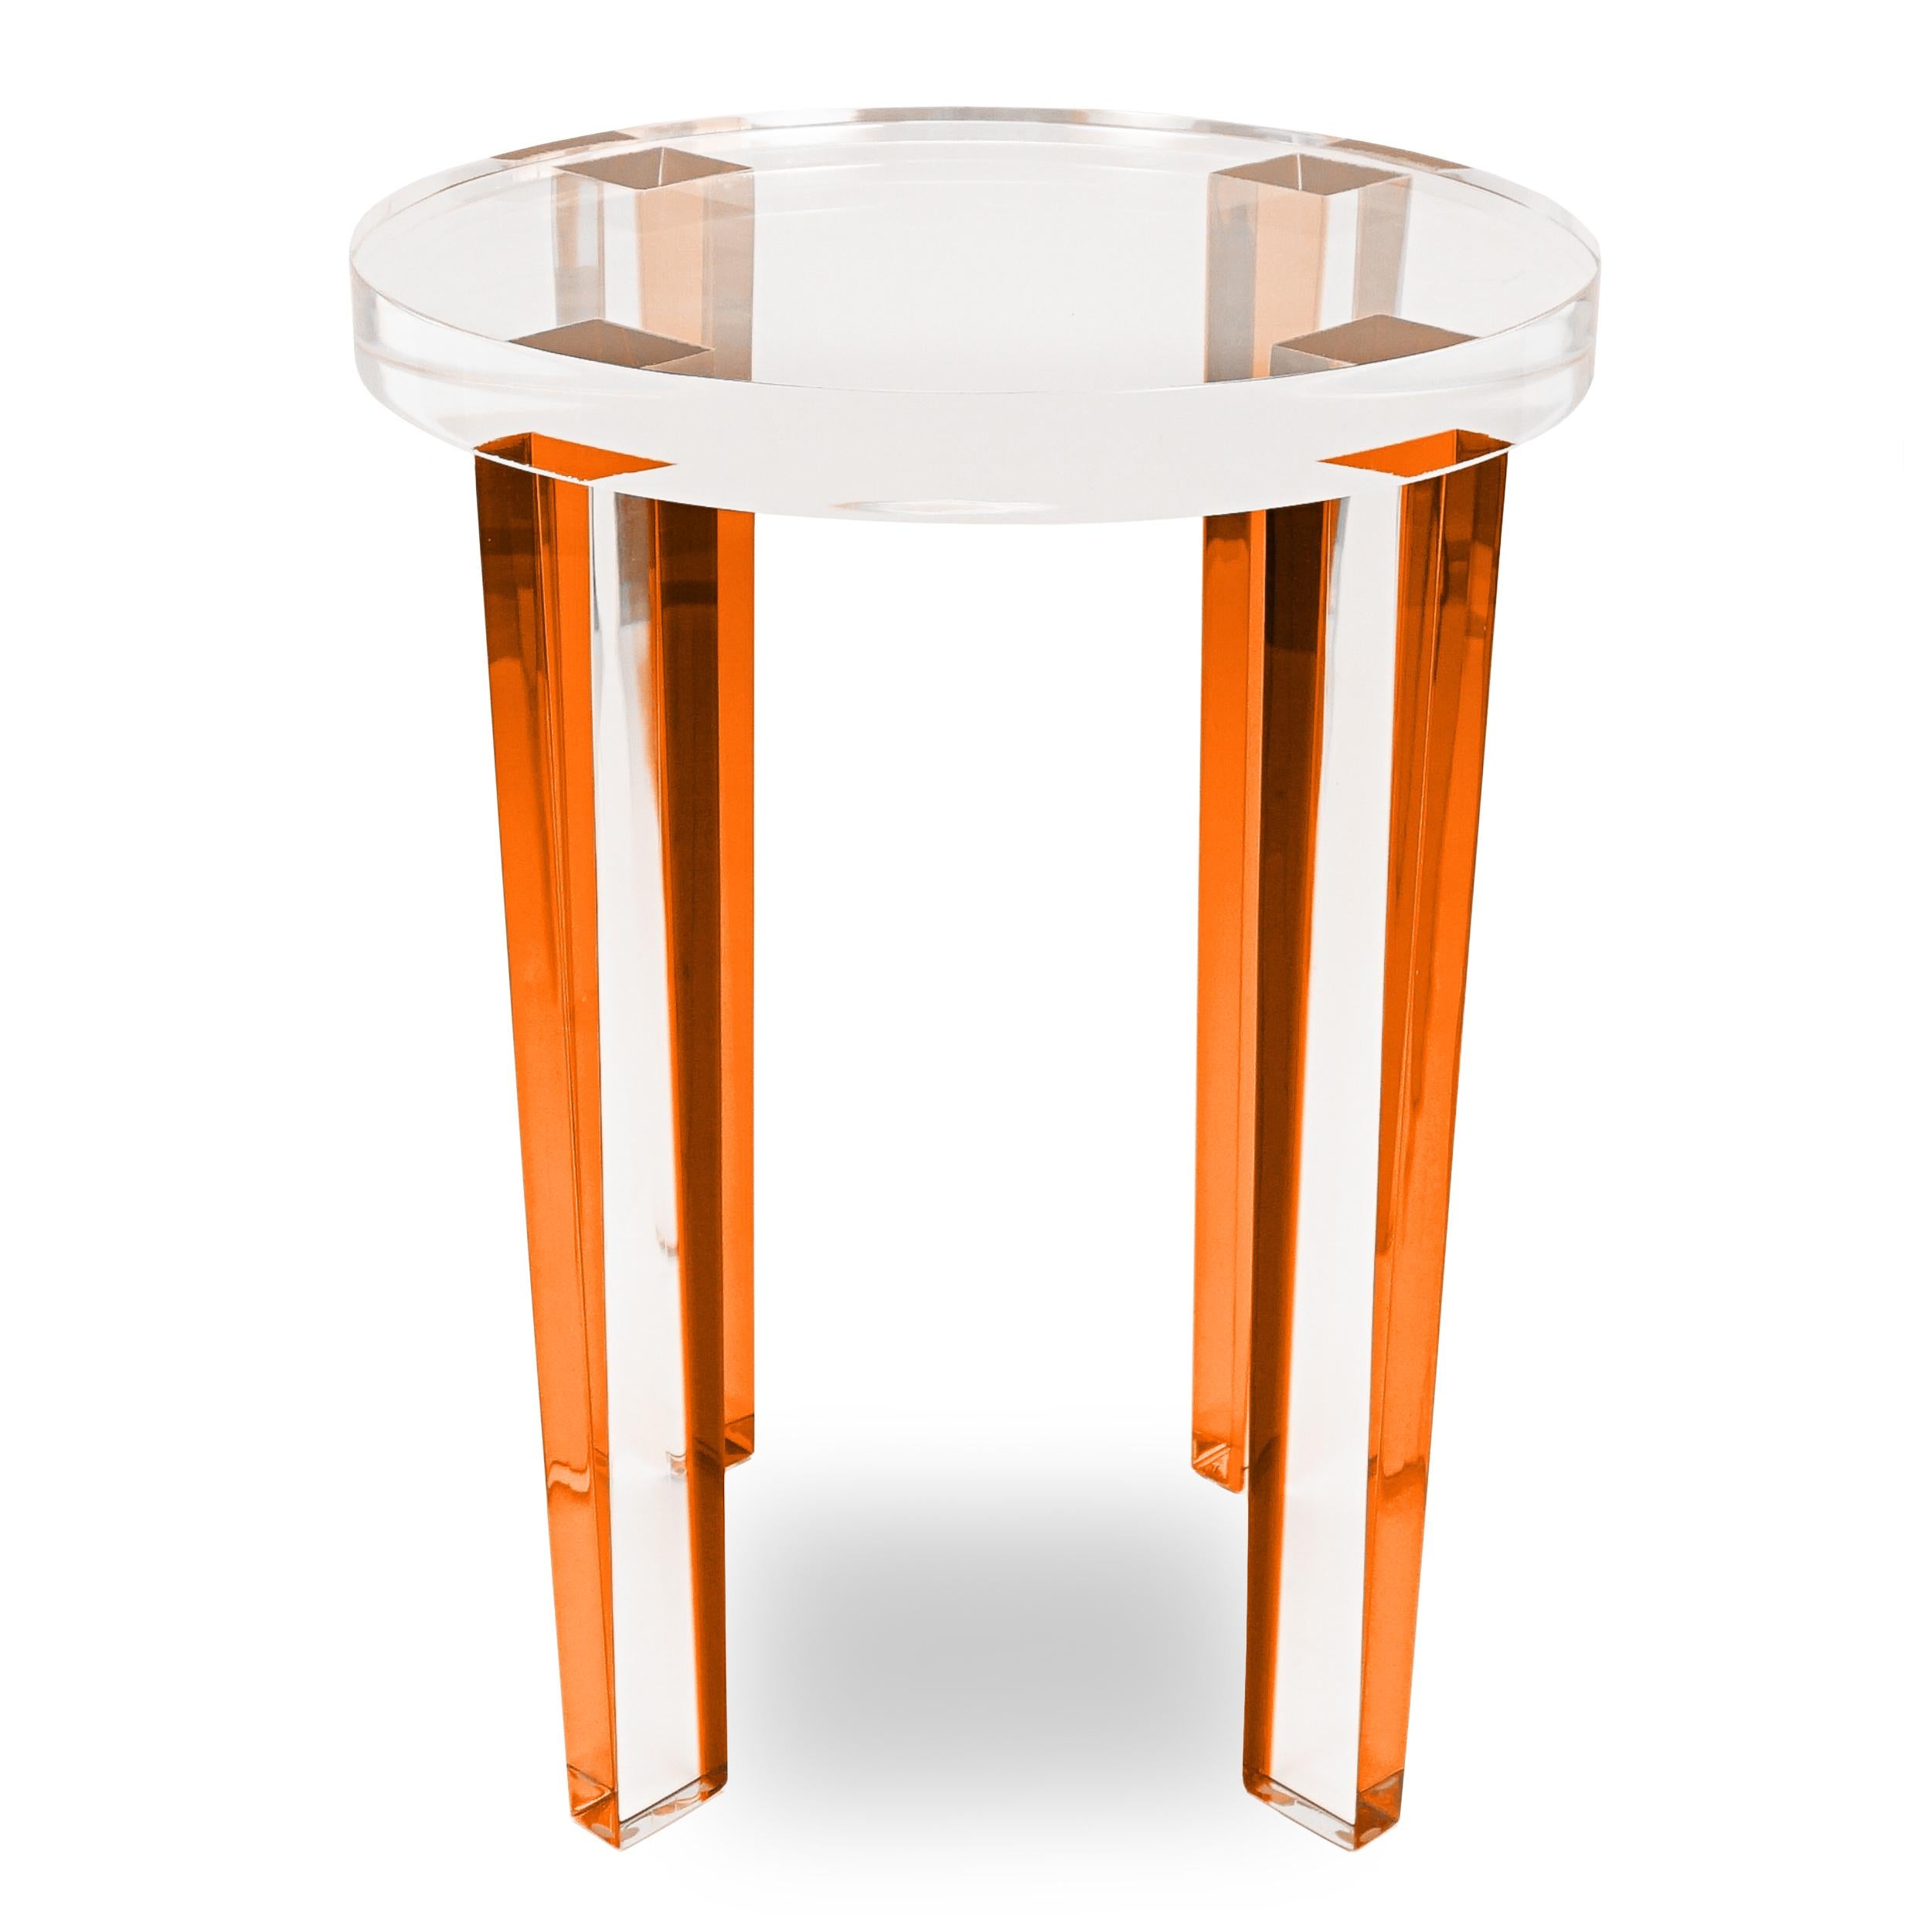 Dieser runde Beistelltisch aus Lucite wurde mit orangefarbenen Lucite-Beinen und einer klaren Lucite-Platte gefertigt. Dieser kleine Beistelltisch reflektiert das Licht und sorgt für eine große Wirkung.

Gesamt: 15 